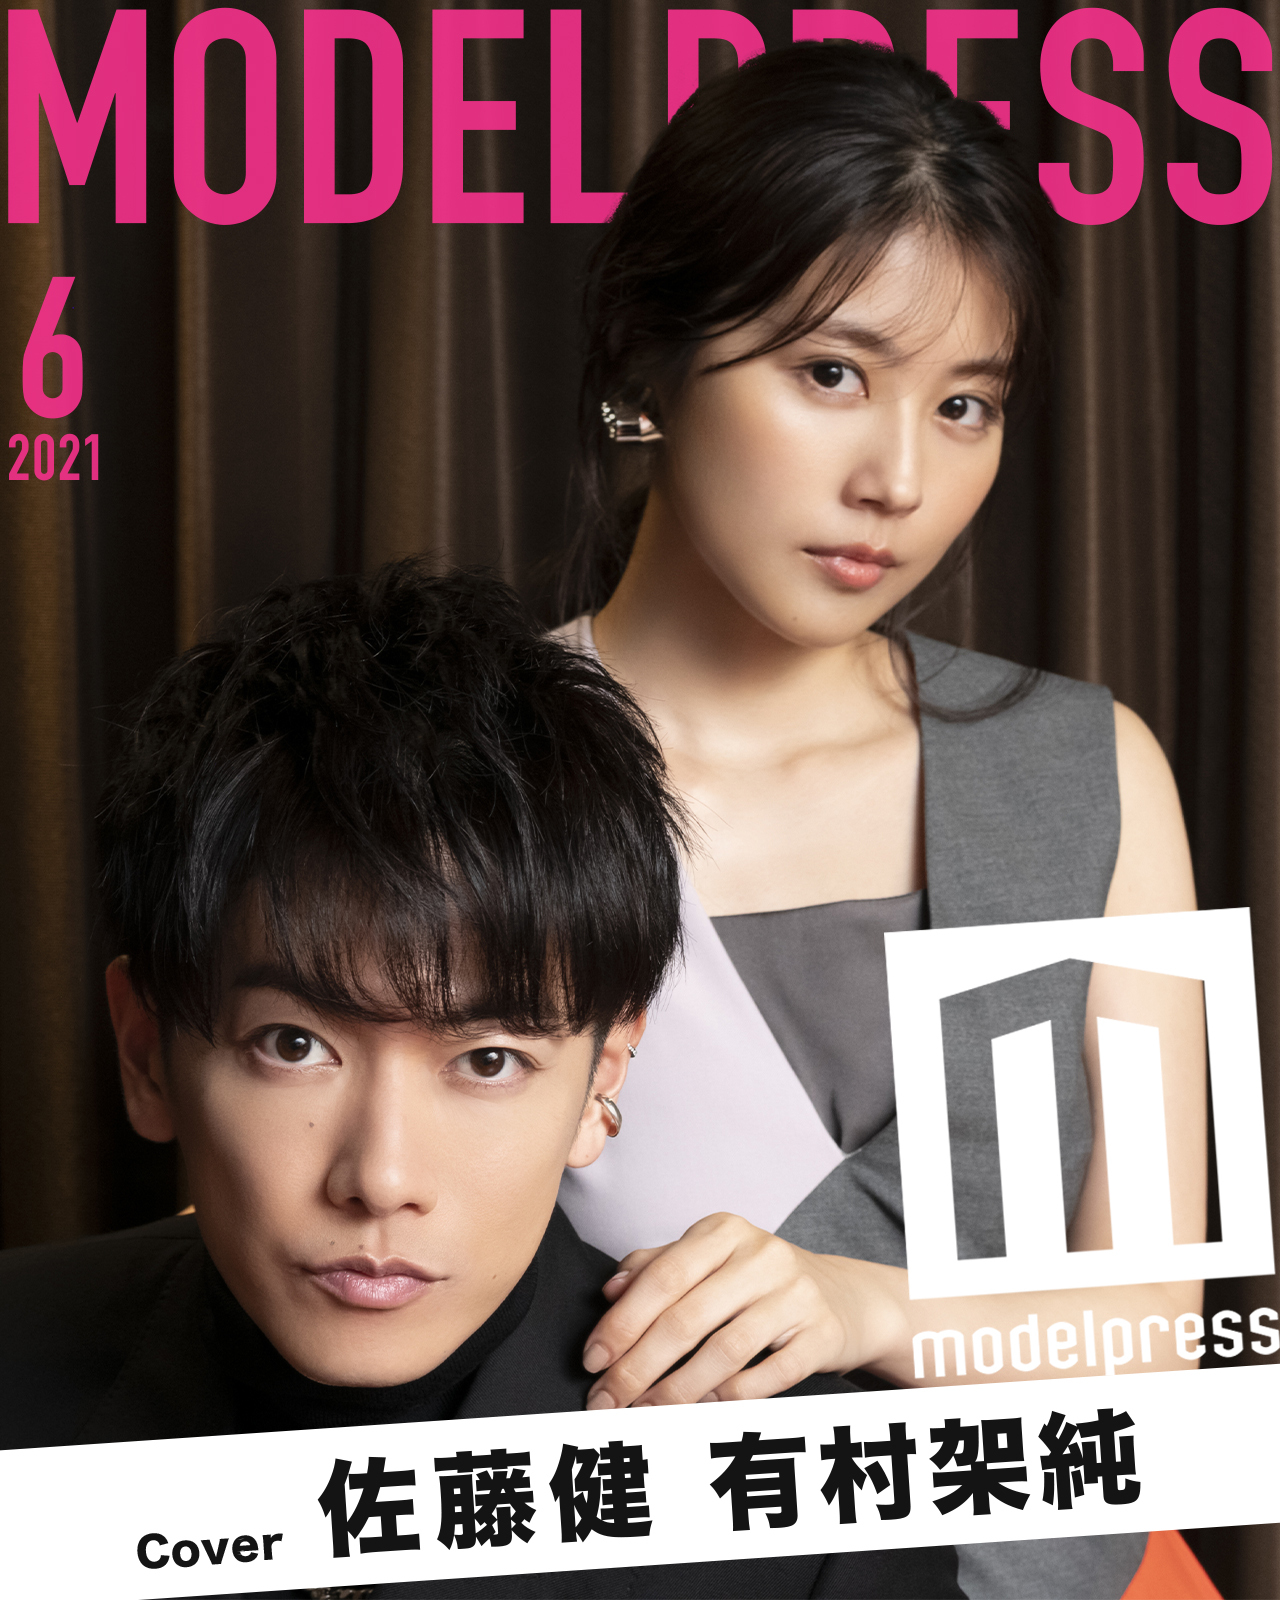 6月表紙は佐藤健 有村架純 モデルプレス新企画 今月のカバーモデル モデルプレス のプレスリリース